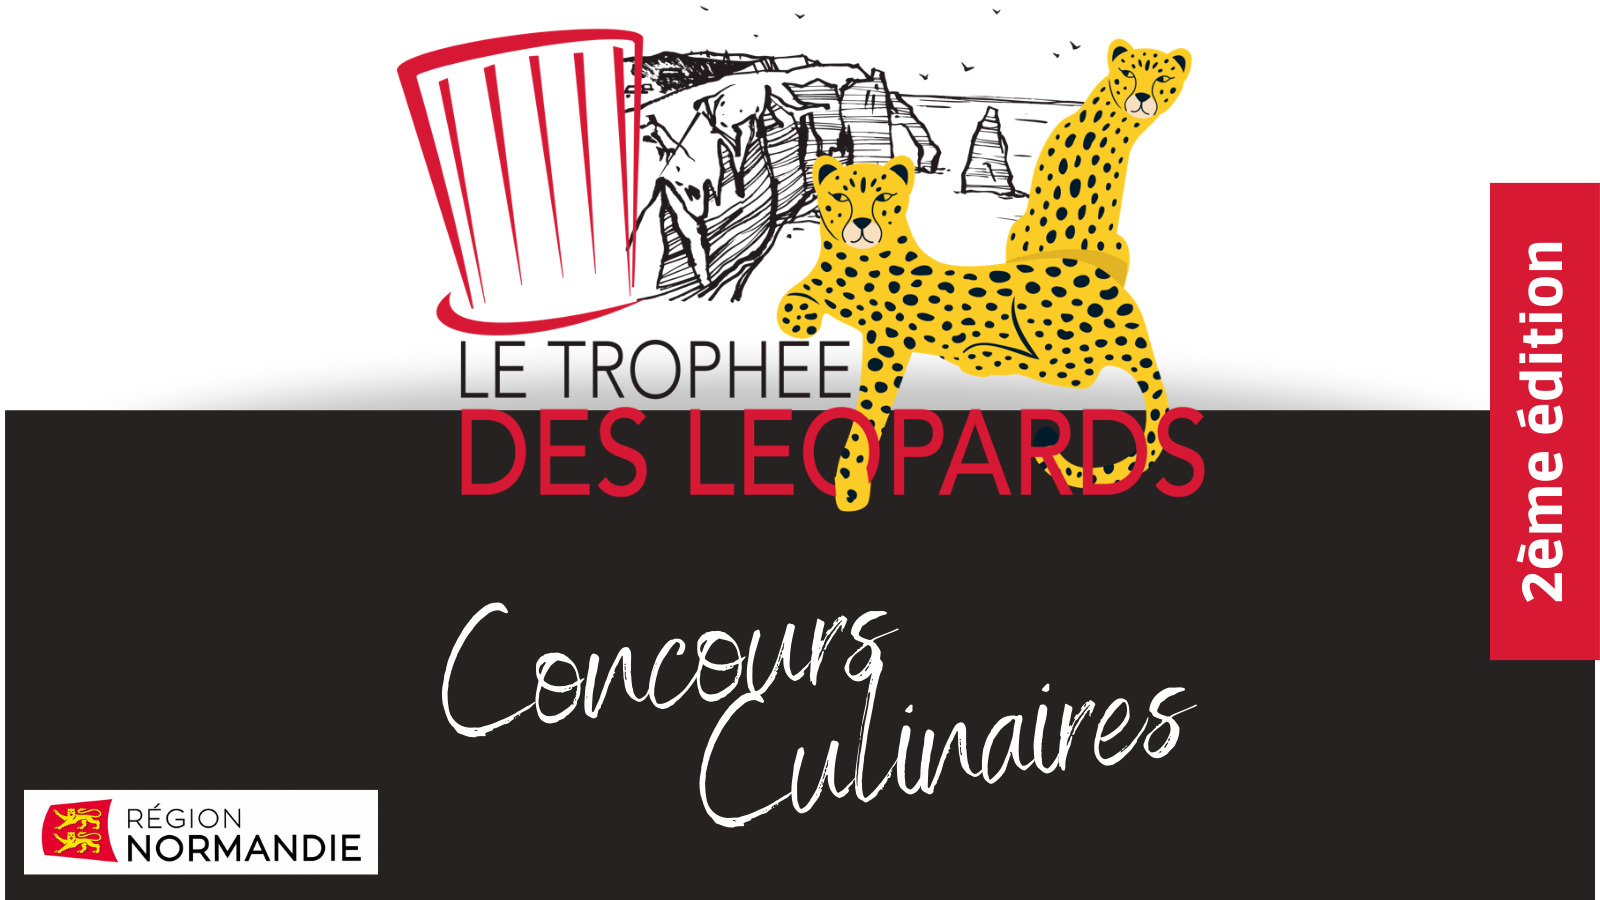 Concours culinaire normand : Le trophée des Léopards !